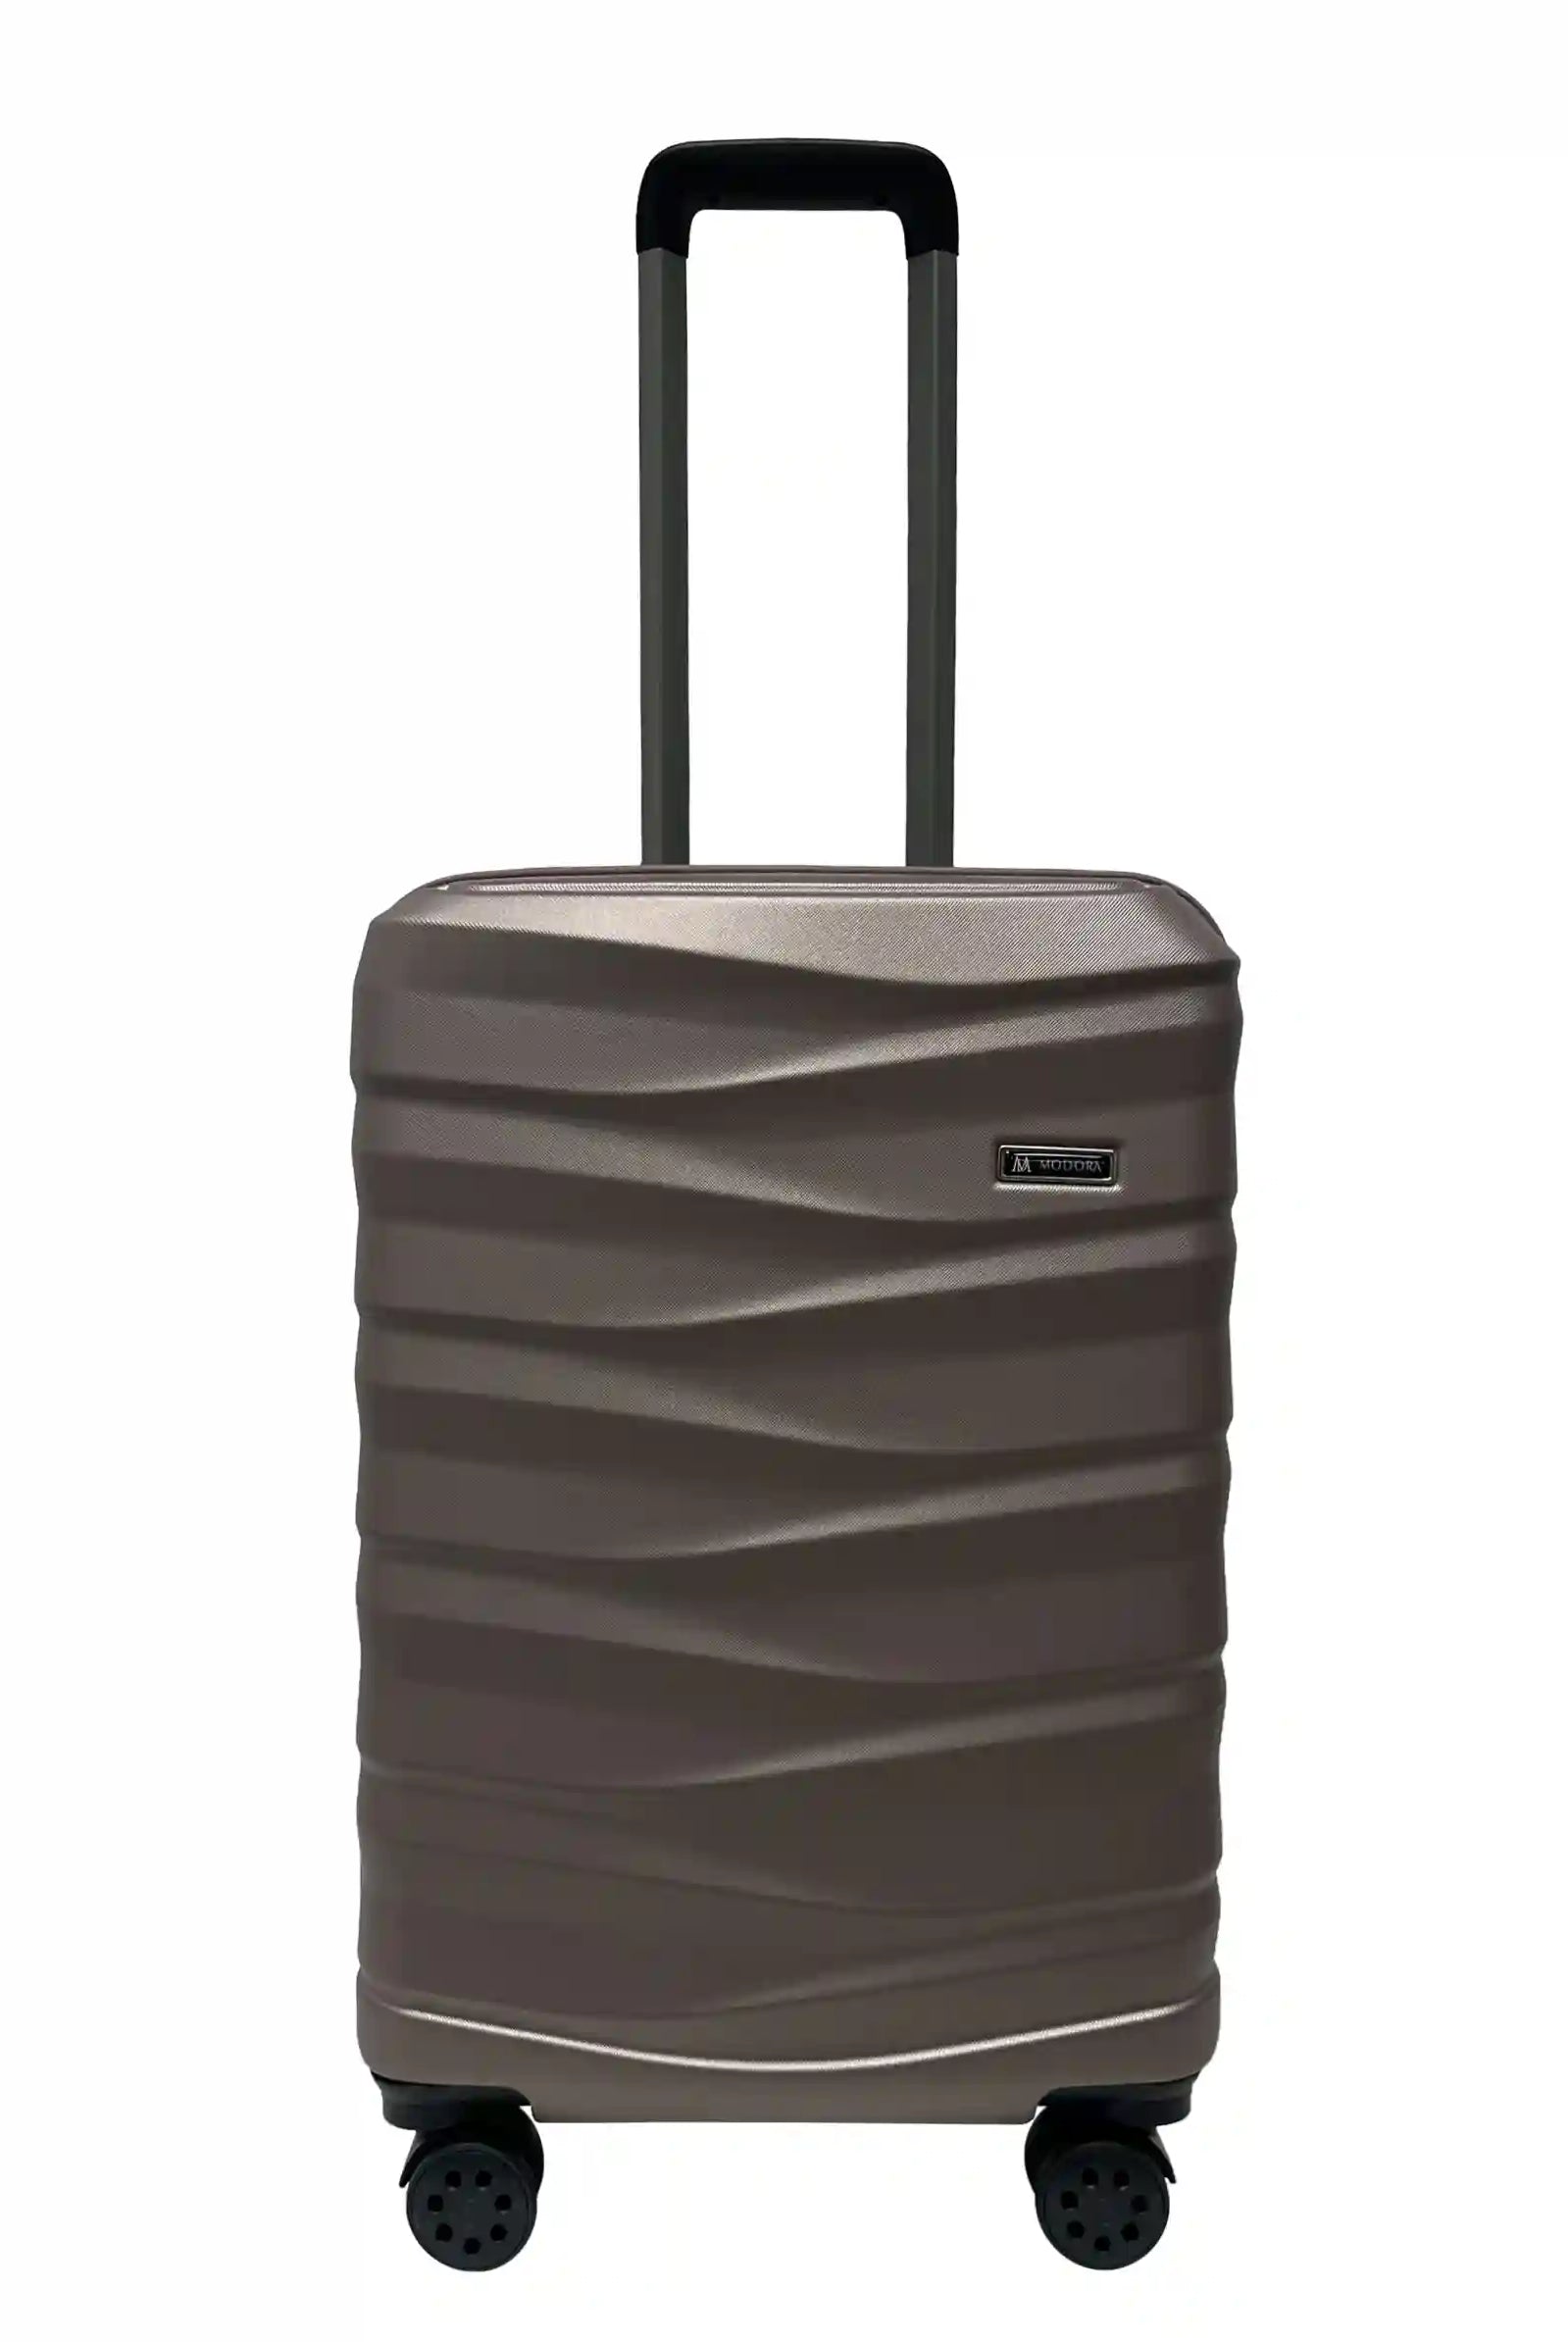 suitcase on wheels medium